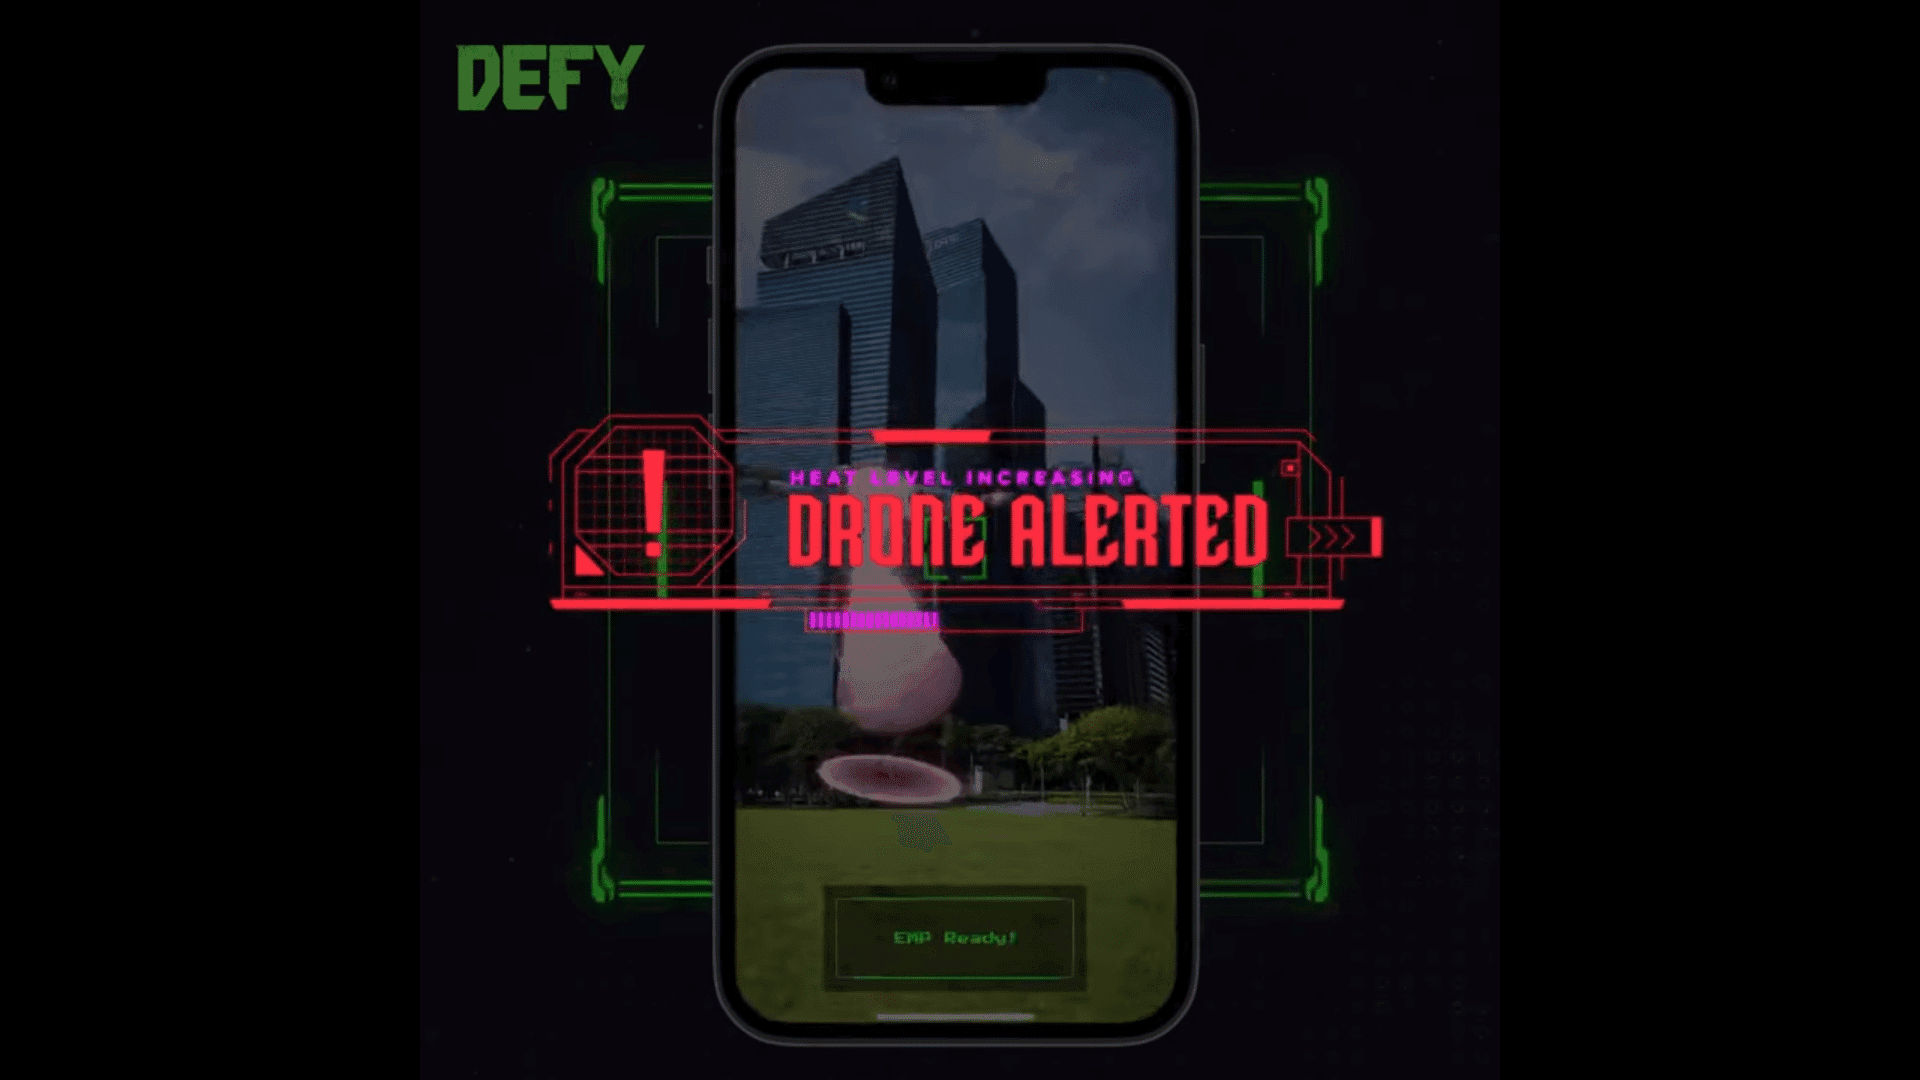 DEFY एक मूव-टू-अर्न मोबाइल गेम है जो एक इमर्सिव मेटावर्स अनुभव प्रदान करने के लिए आभासी और भौतिक दुनिया के तत्वों को जोड़ता है।